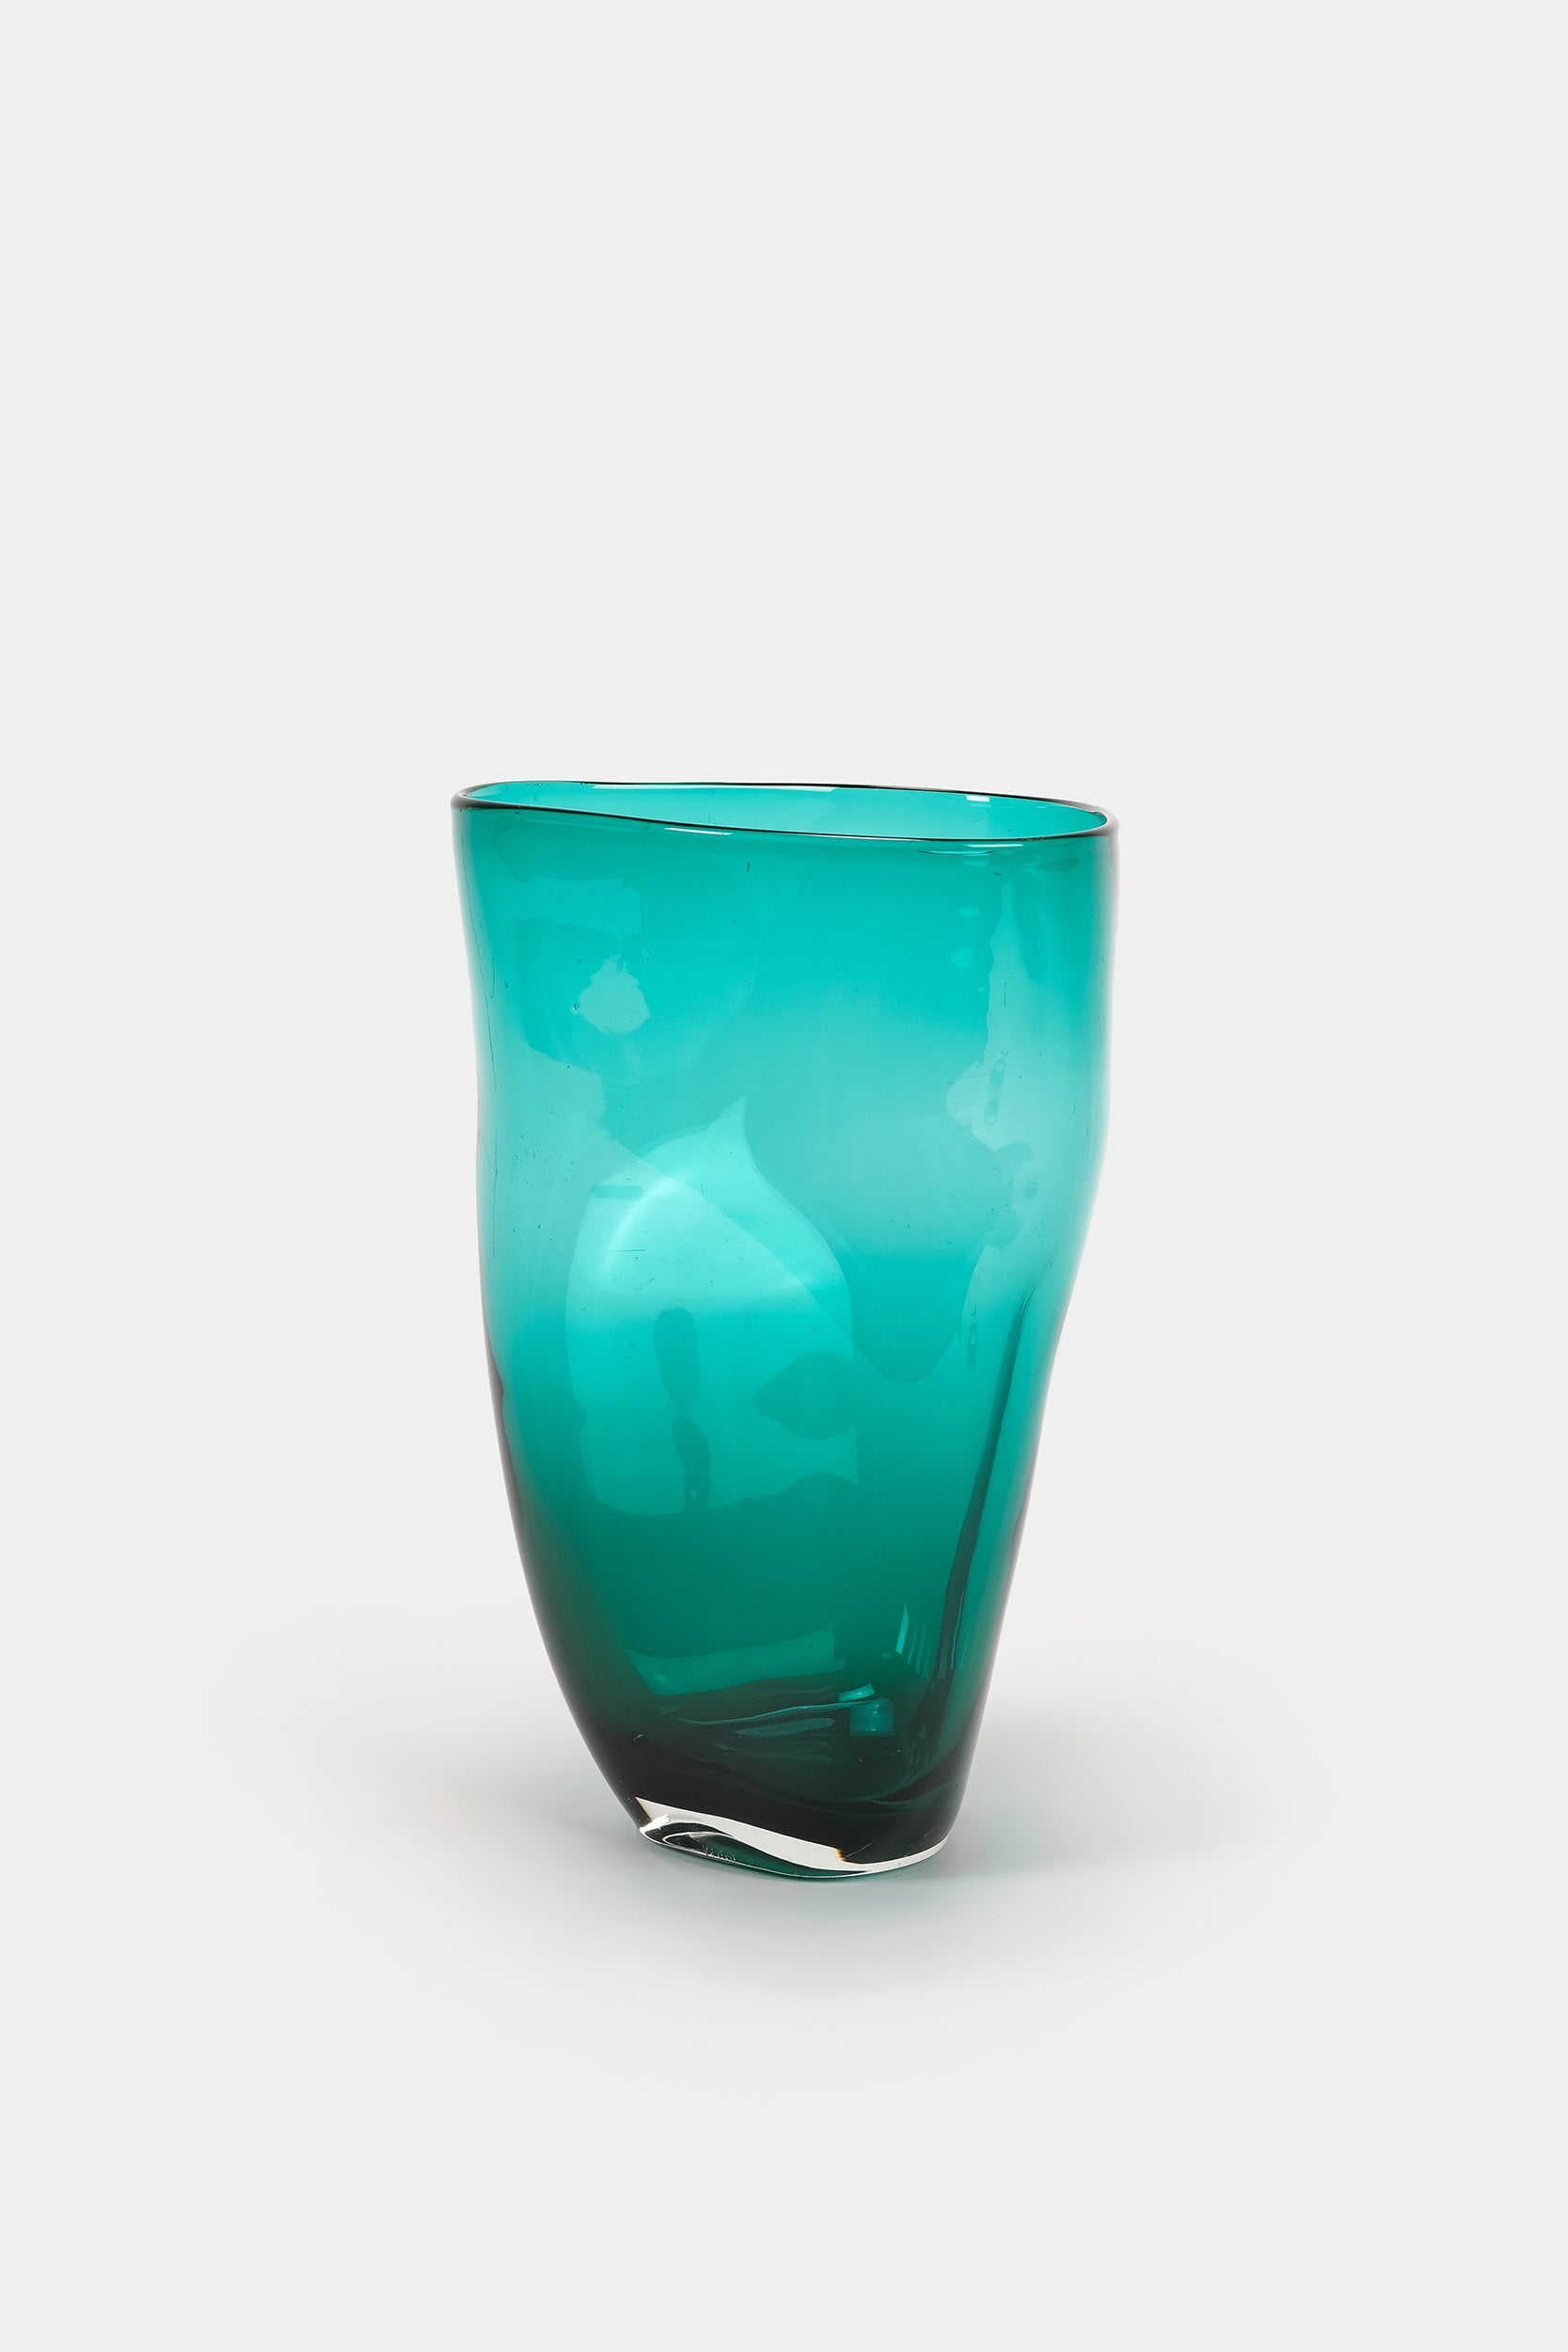 Grosse Vase, Mundgeblasen, Italien, 50er